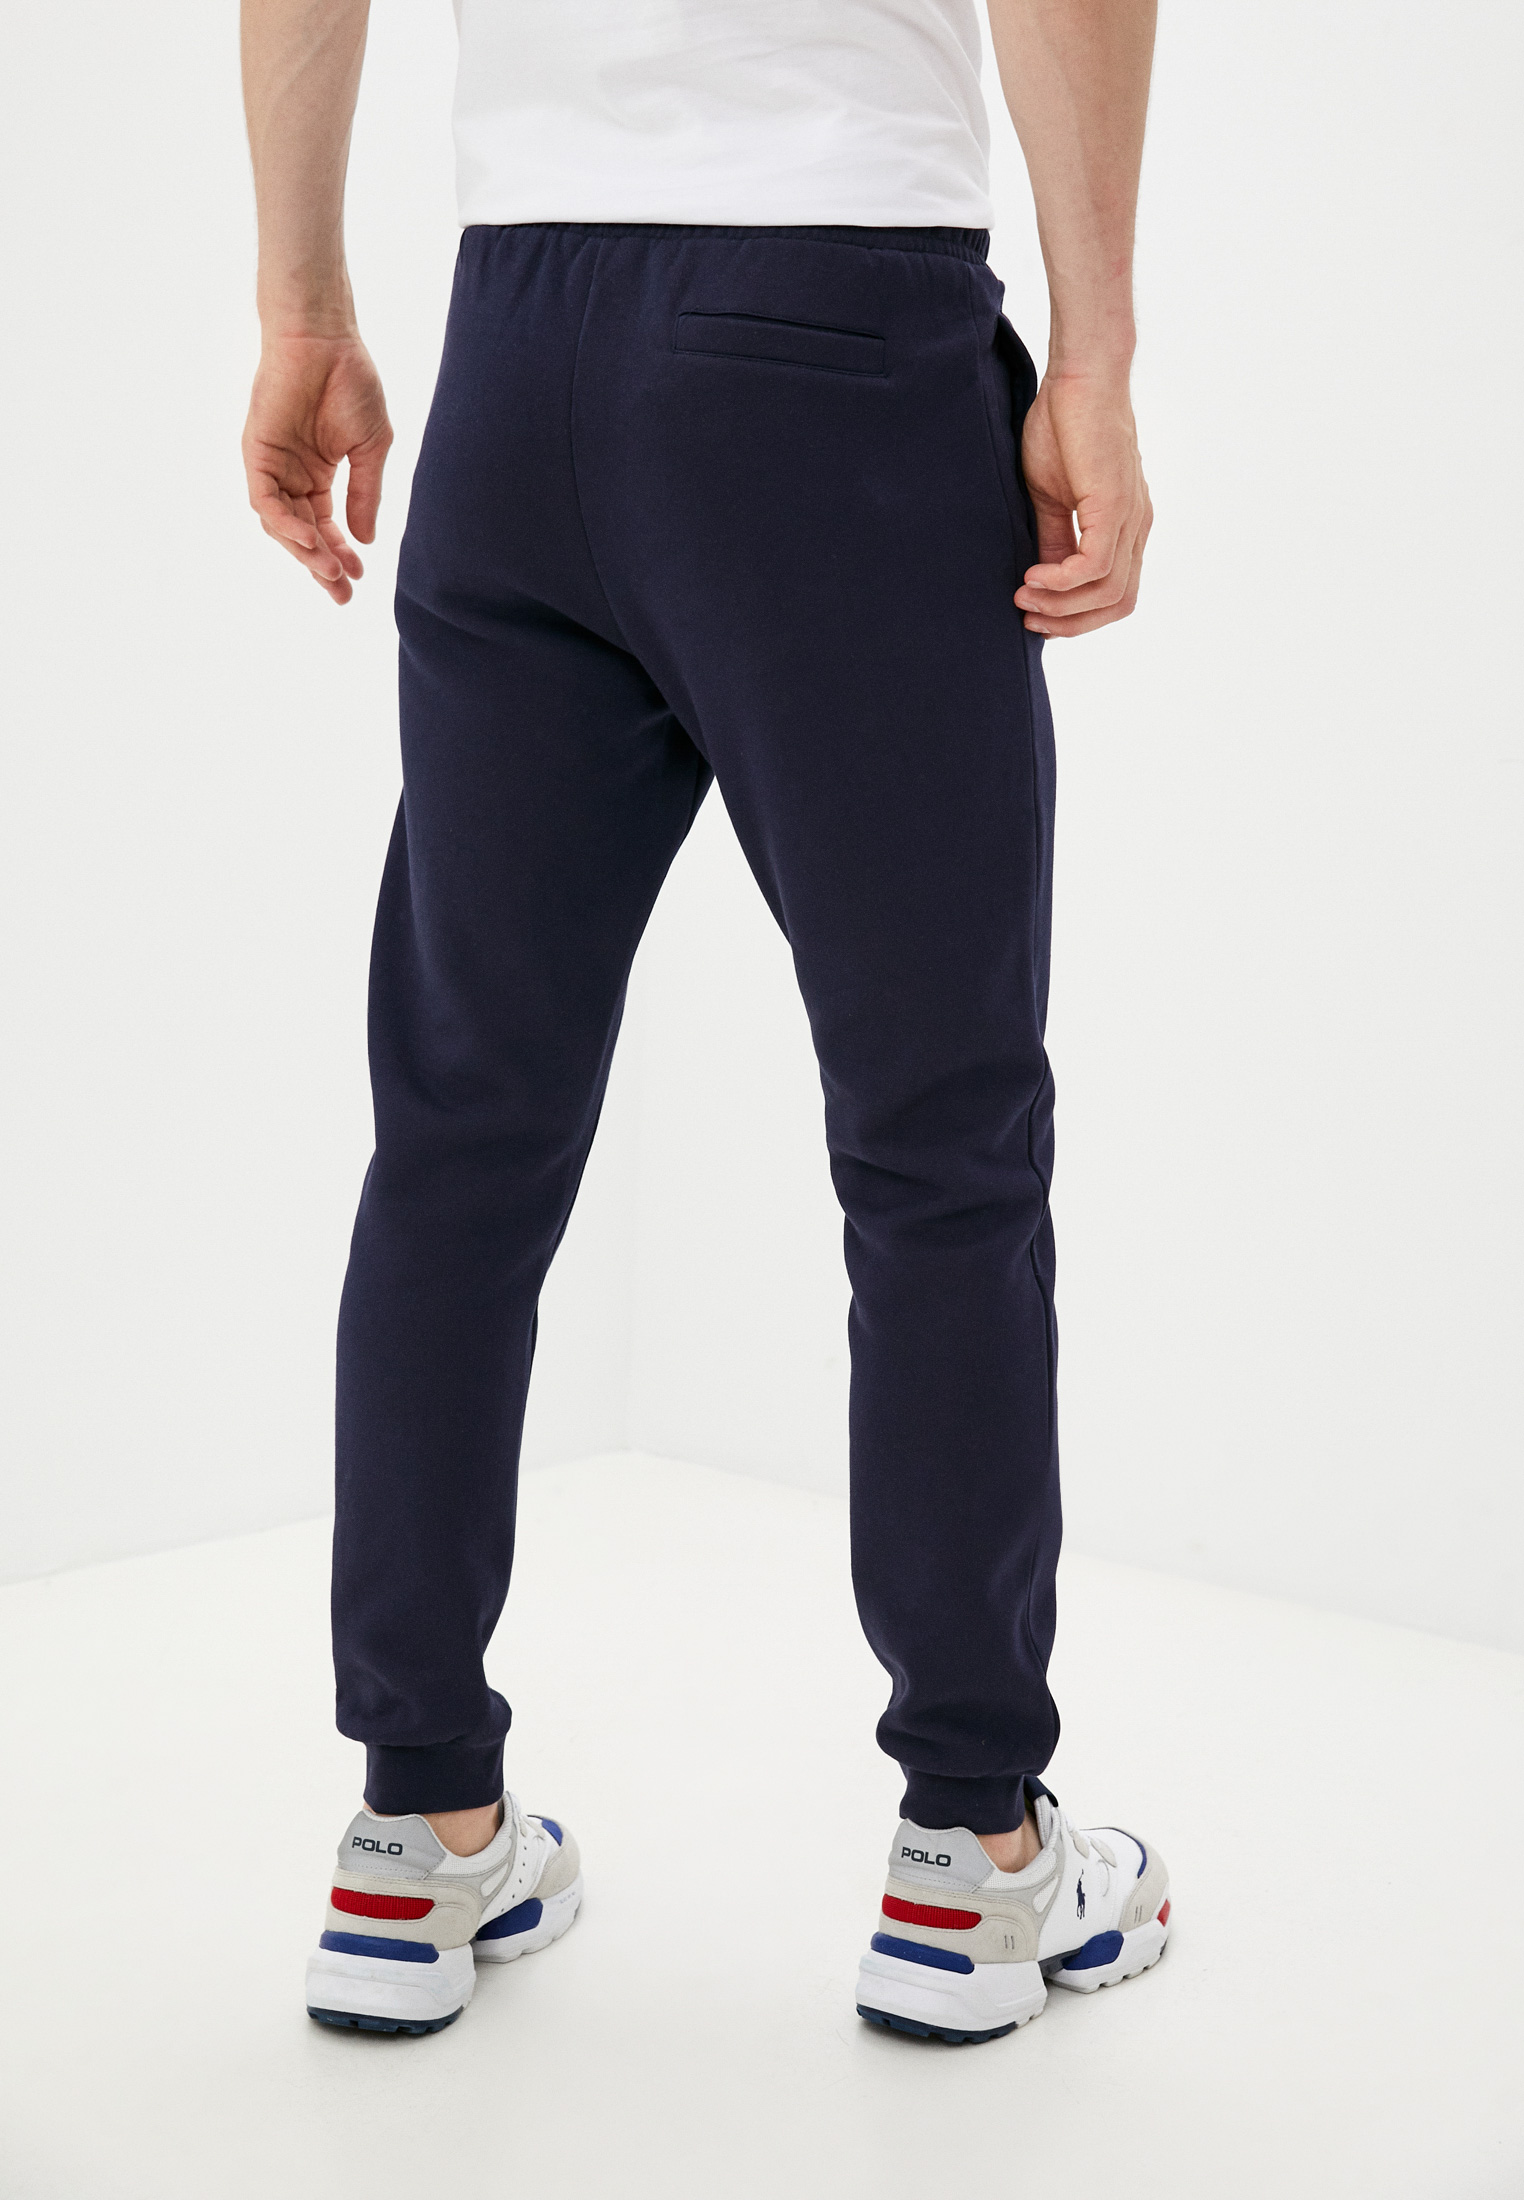 Мужские спортивные брюки Trussardi (Труссарди) 52P00204-1T004241: изображение 4